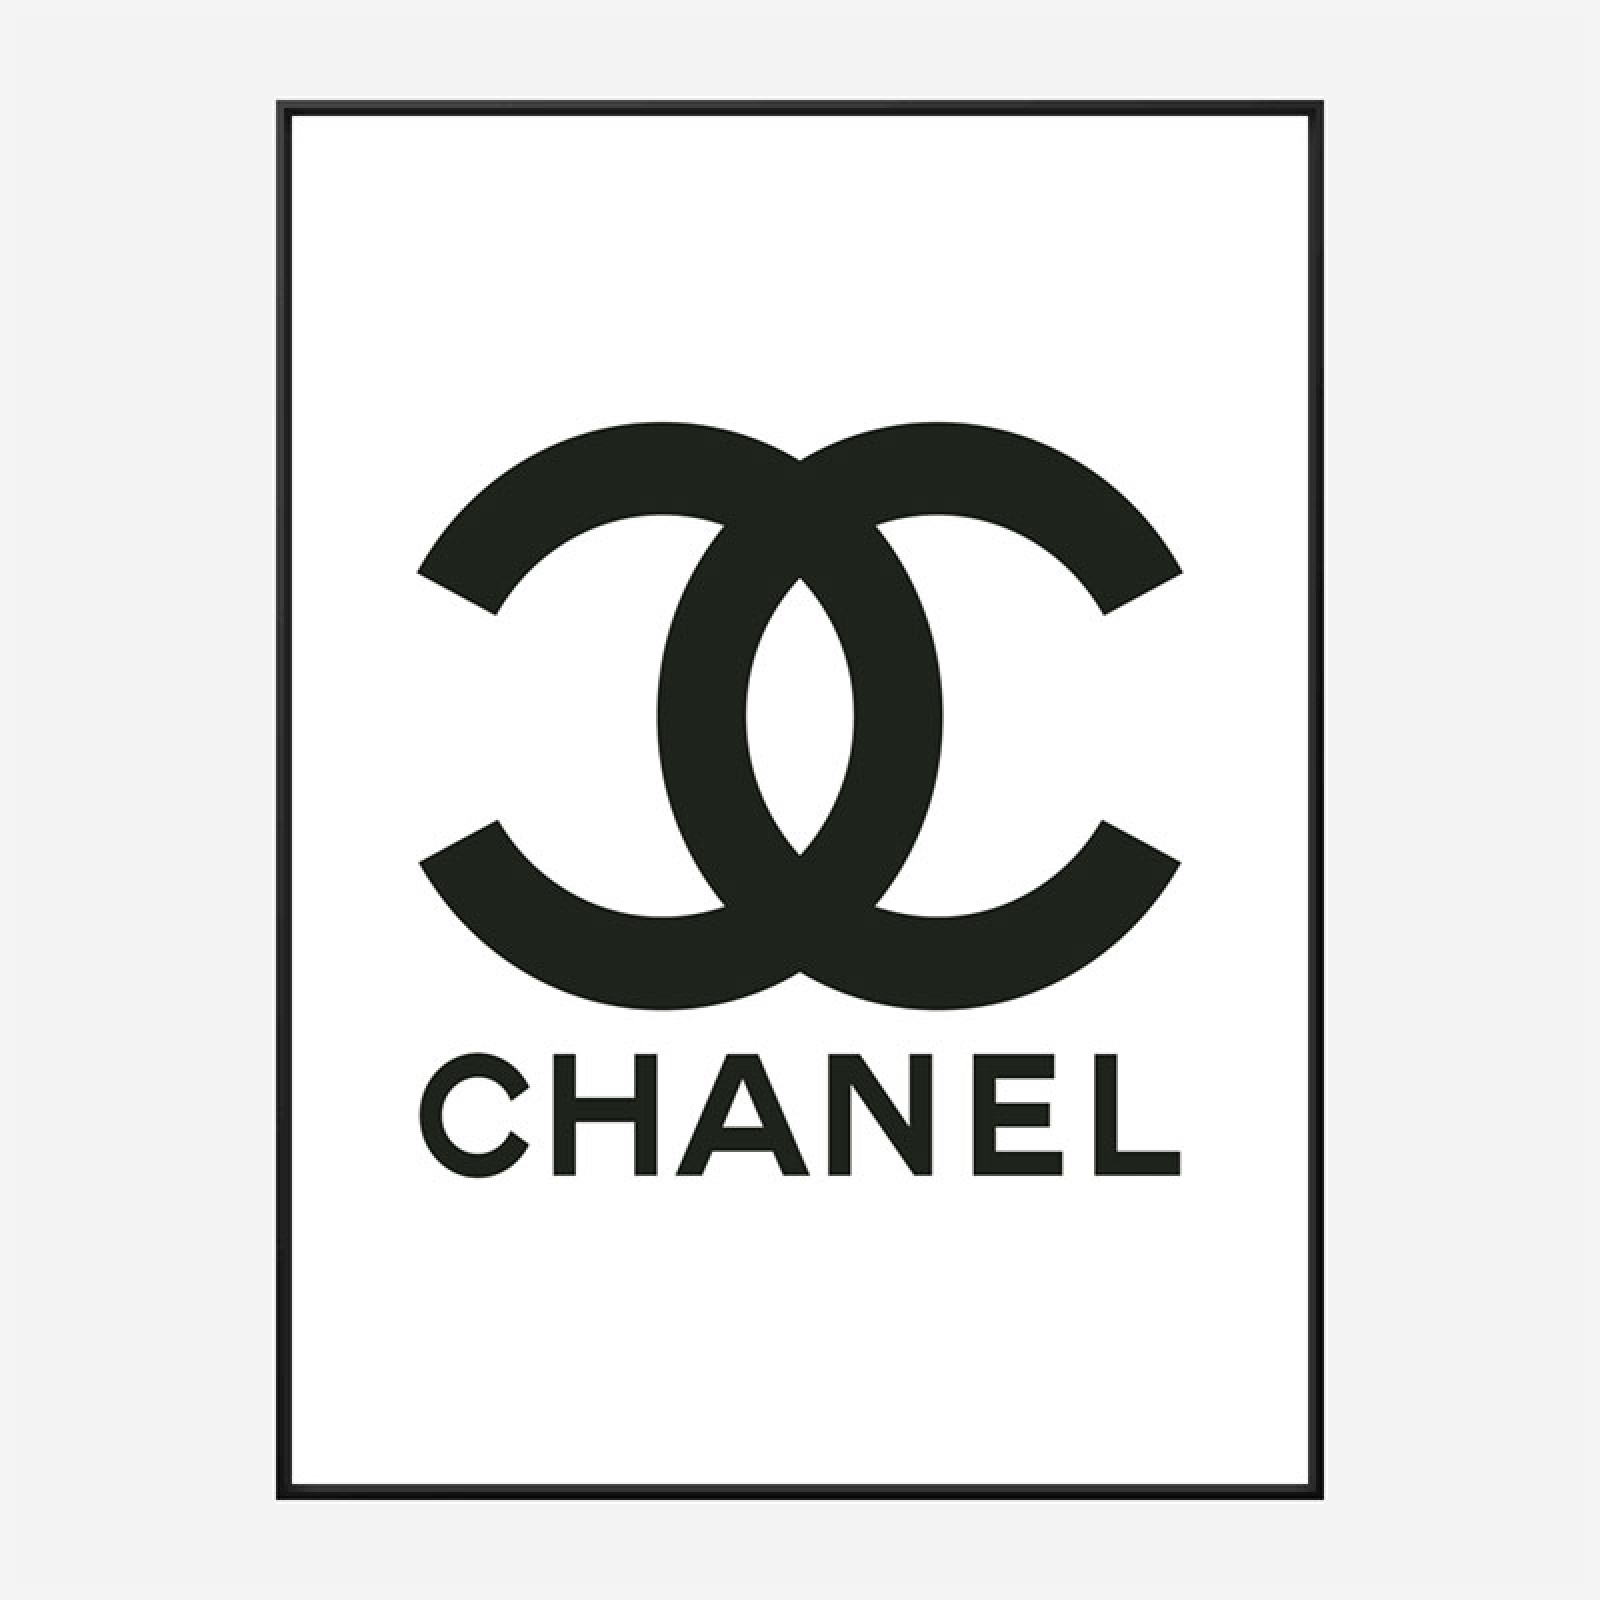 Printable Chanel Logo - Printable Templates